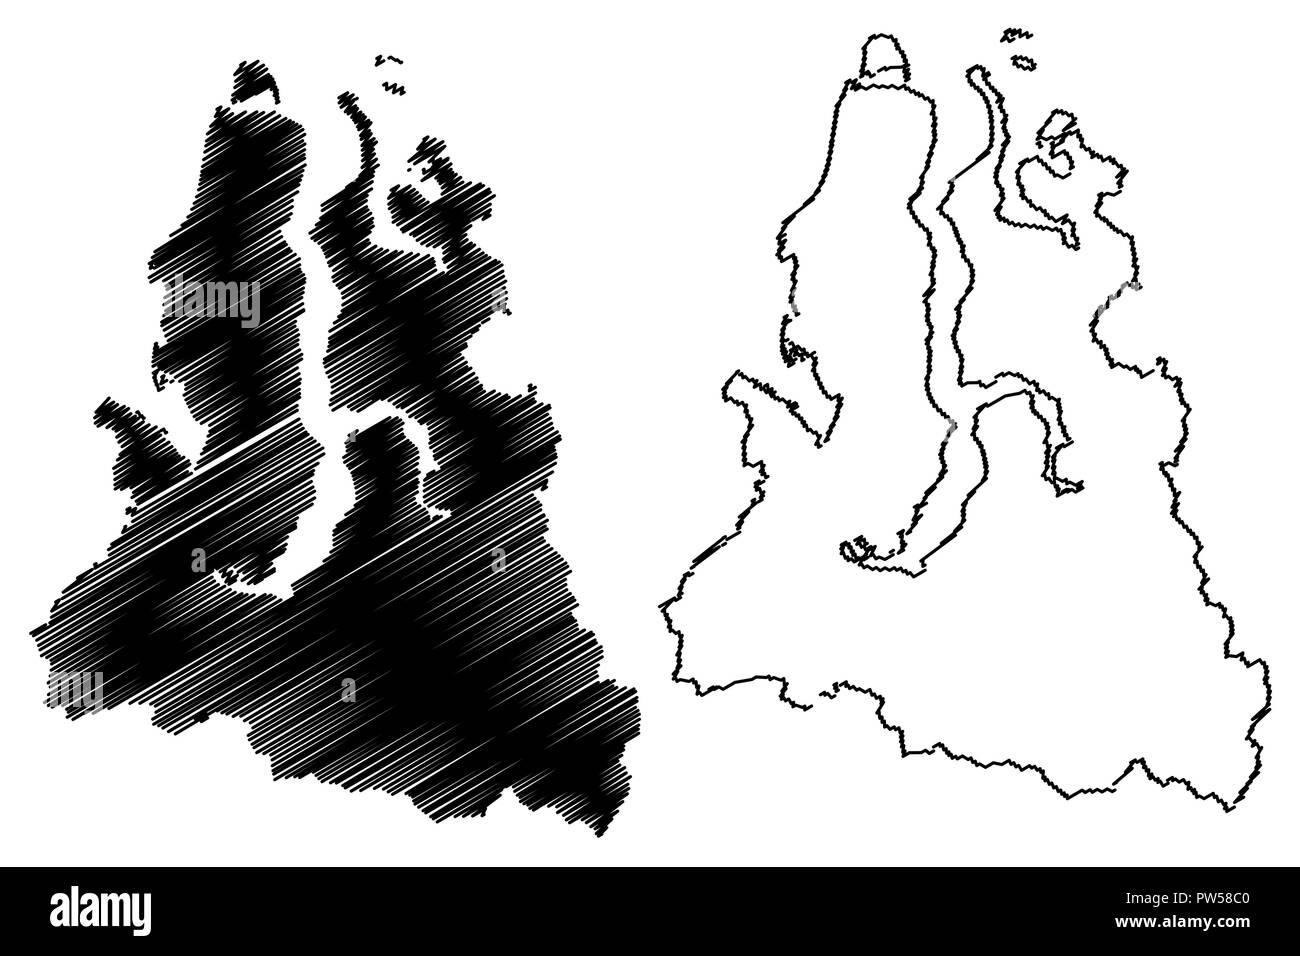 Jamal-nenzen autonomen Okrug (Russland, Subjekte der Russischen Föderation, autonomen Okrug) Karte Vektor-illustration, kritzeln Skizze Jamal-nenzen Stock Vektor